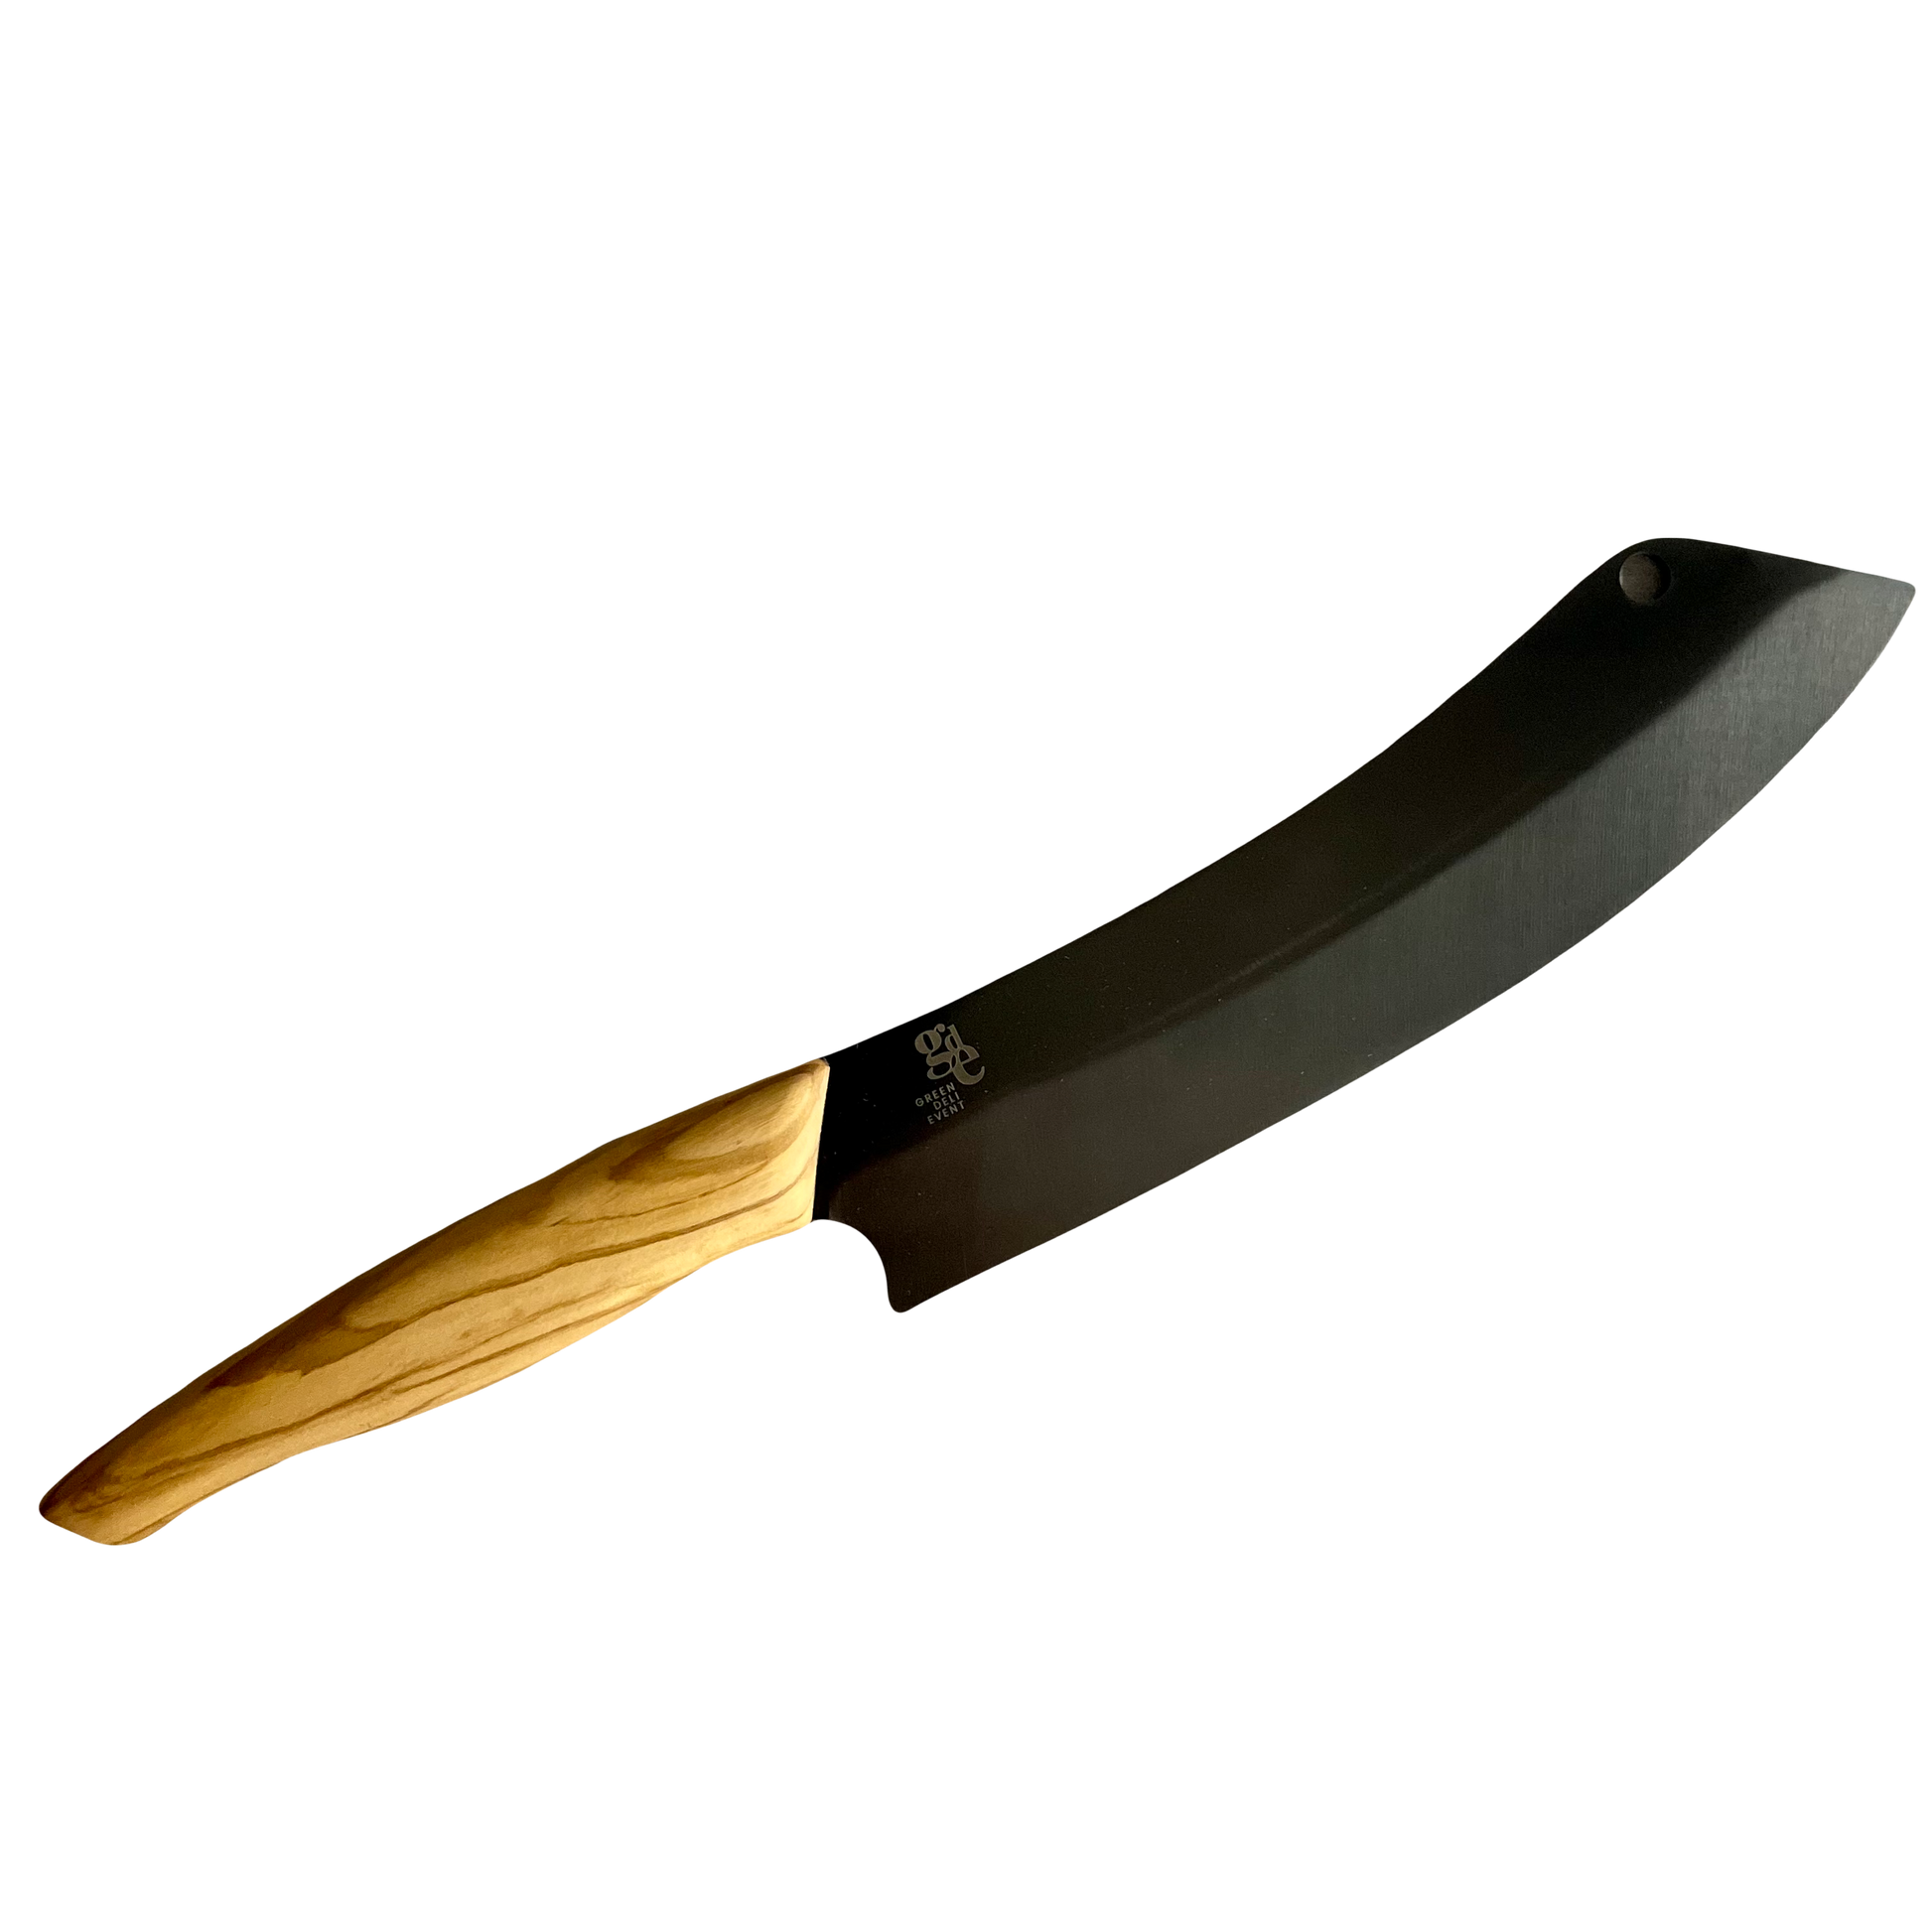 Ein Barbequemesser mit schwarzer Klinge und einem Olivenholz Griff - Klingenlänge 21cm